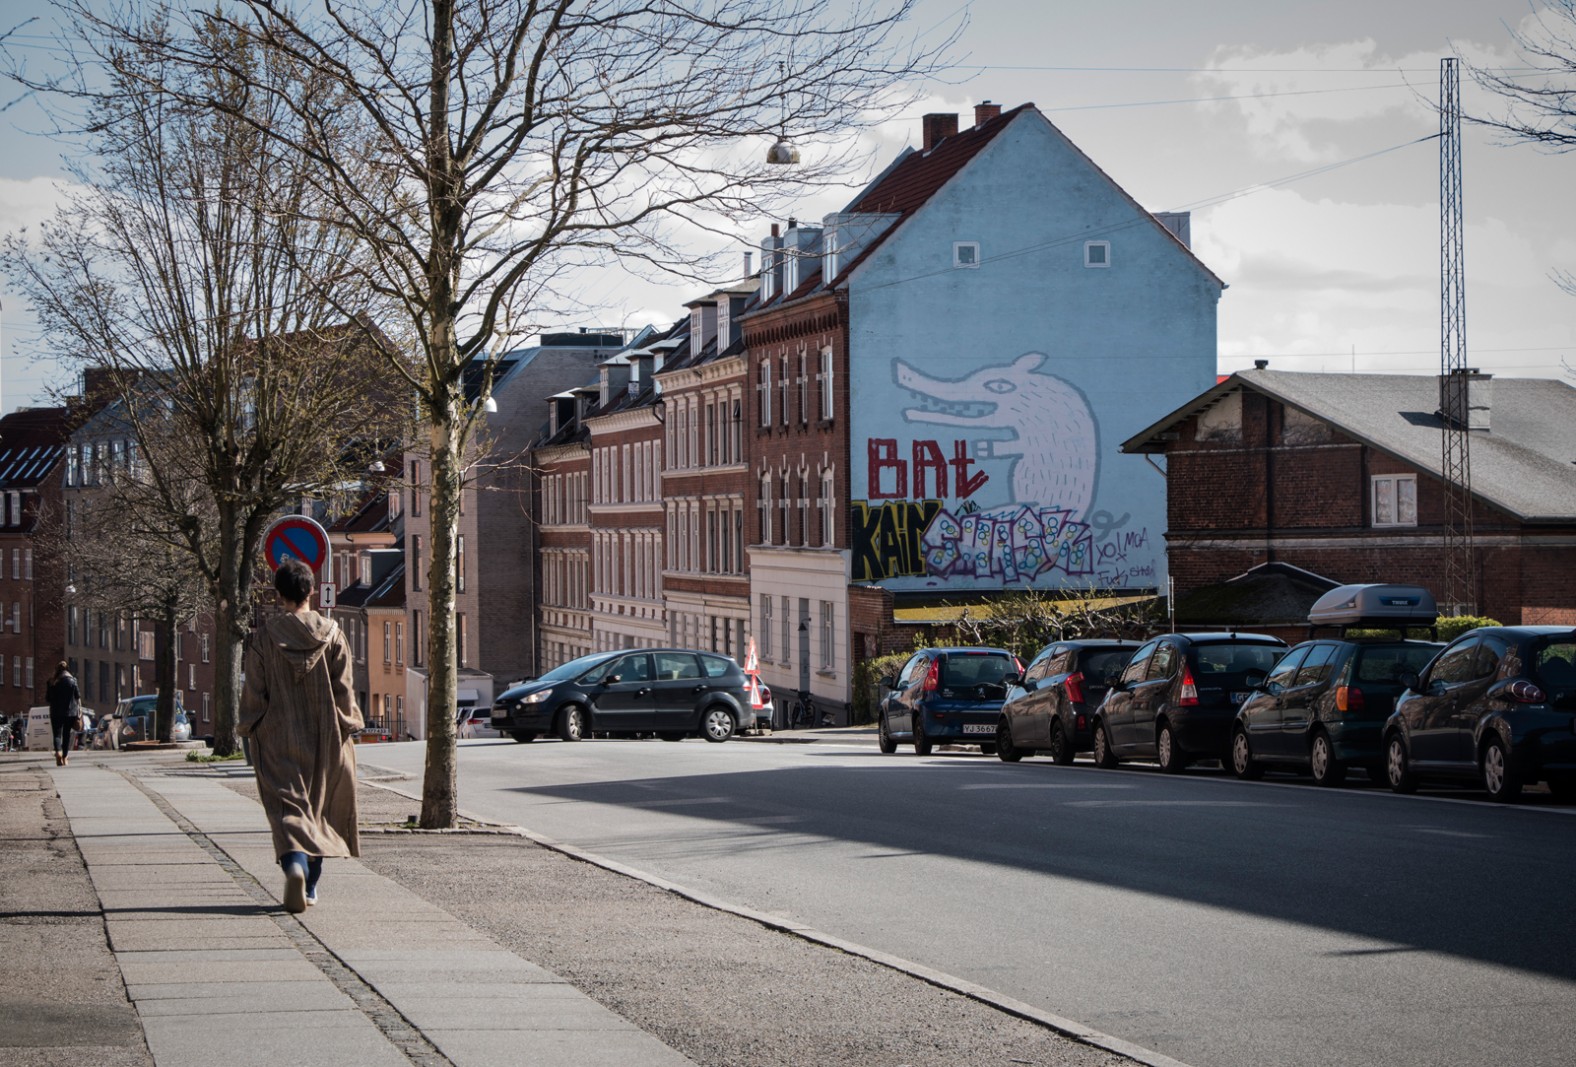 Gavlmalerier i Aarhus</br>Kan ses i Langelandsgade. Malet af ukendt kunstner. 
<br /></br>Foto: Mariana Gil